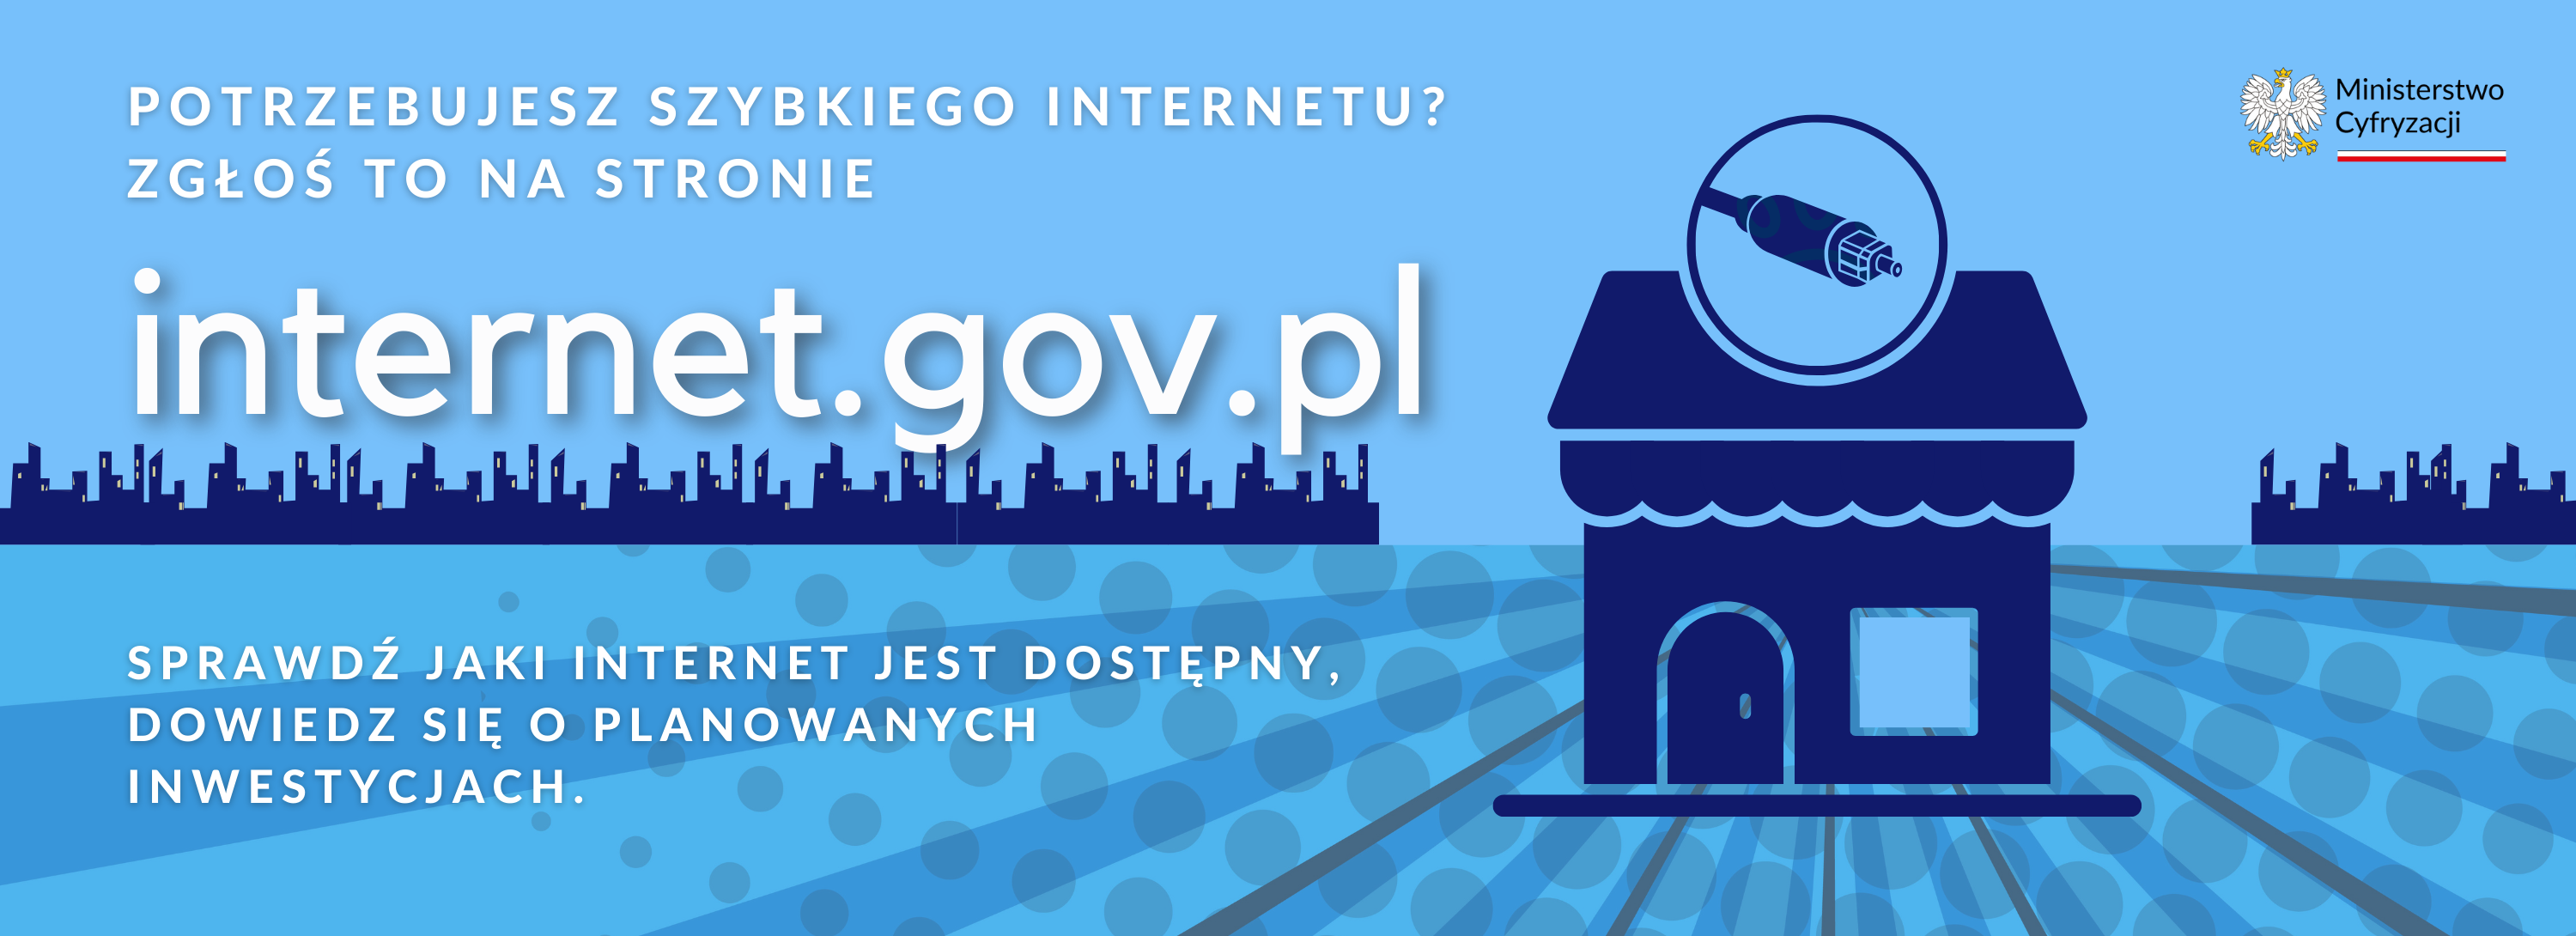 internet.gov.pl - baner